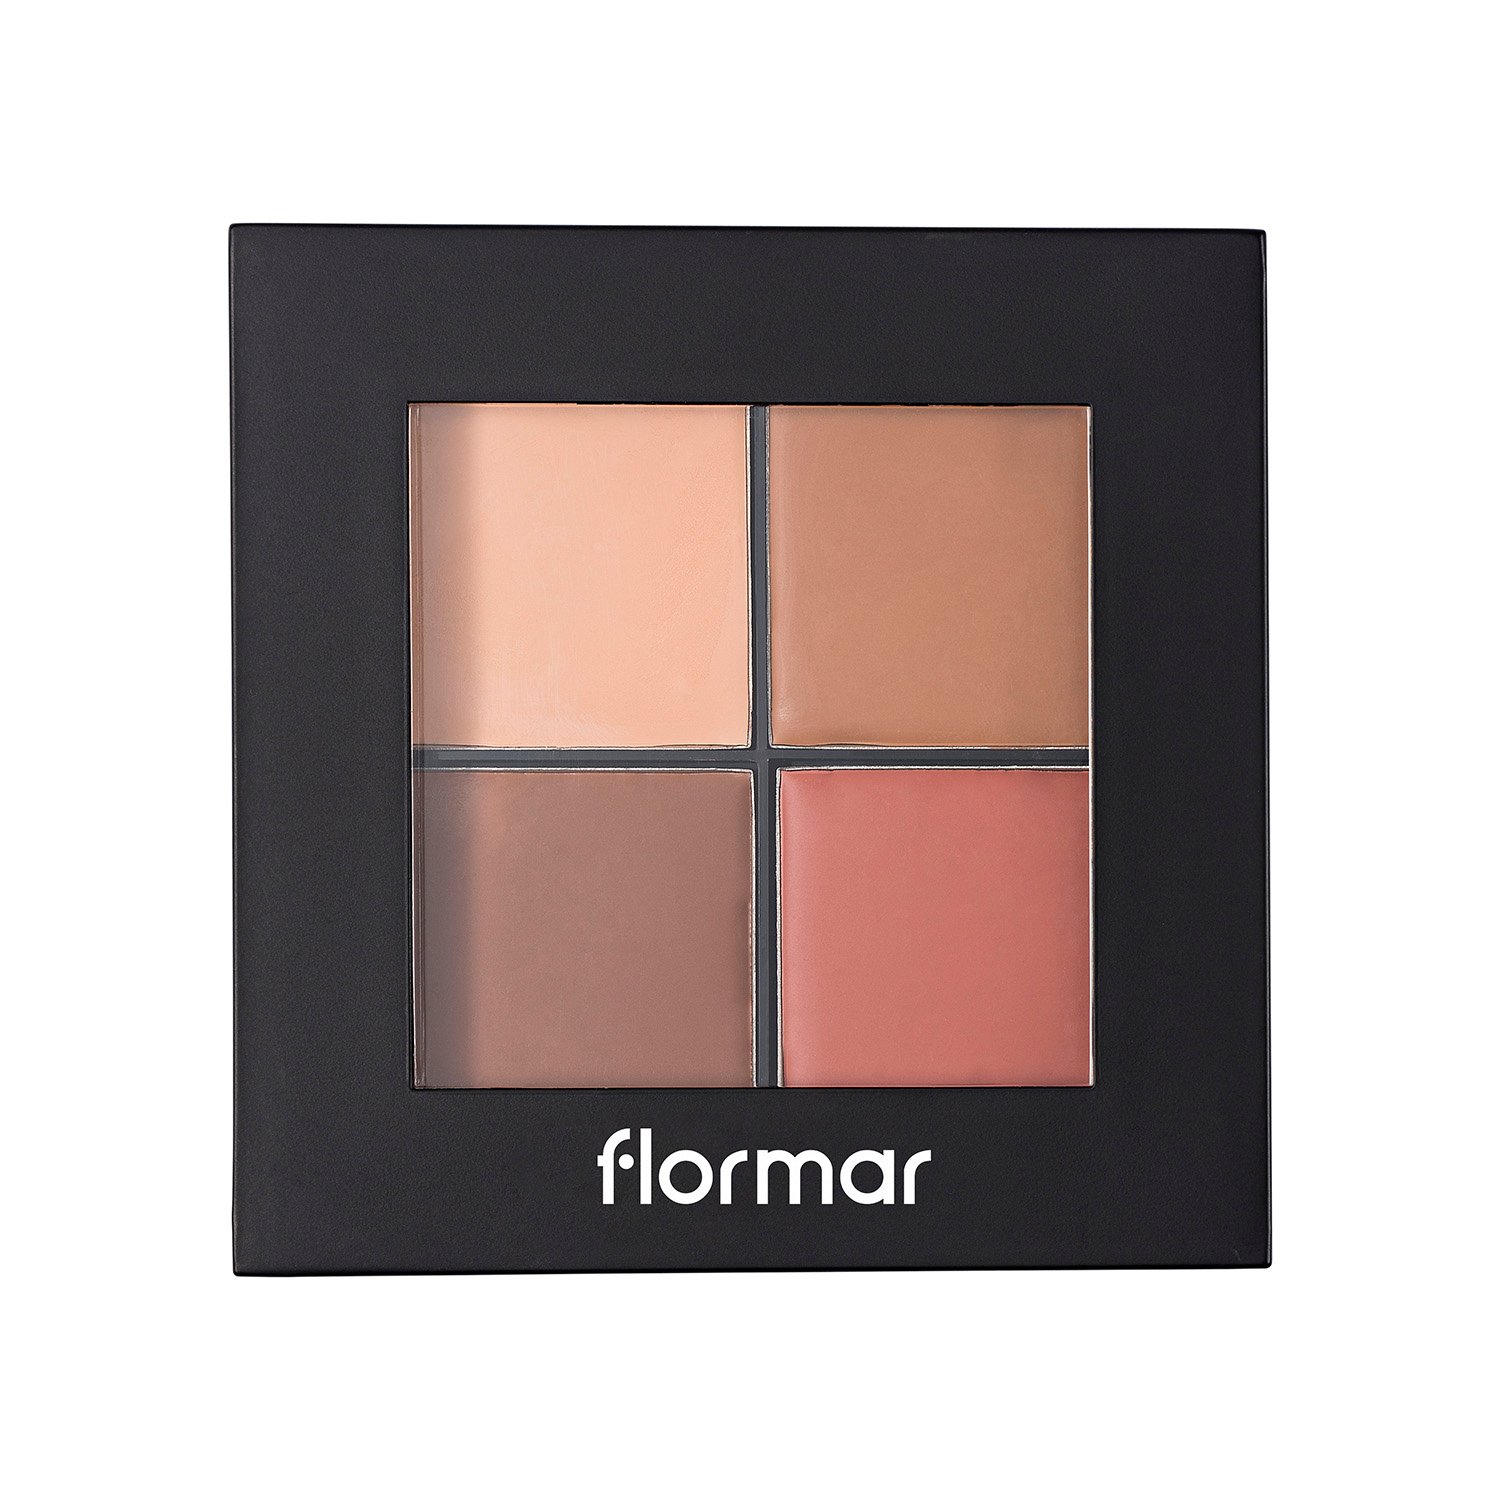 Палетка для контуринга Flormar Contour Palette, тон Medium, 10 г (8000019544908) - фото 1